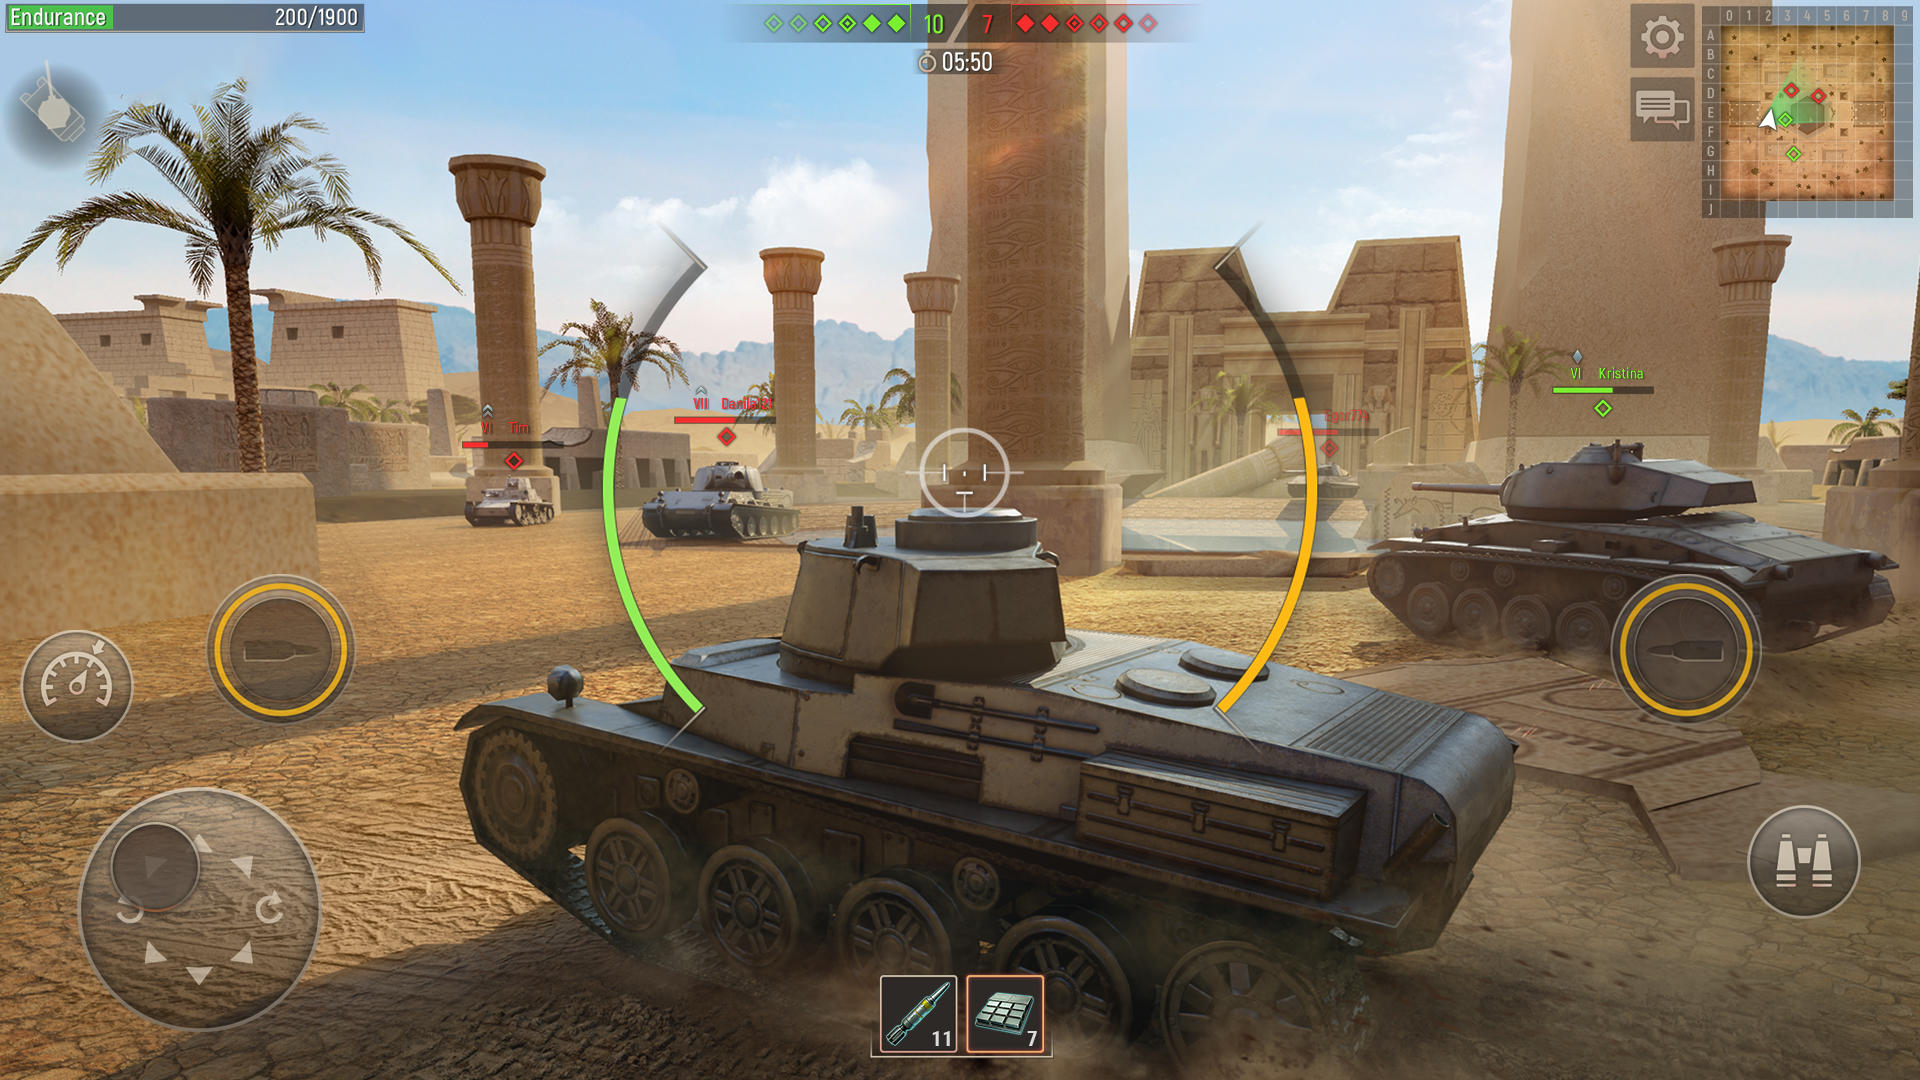 Screenshot 1 of Боевые танки: онлайн-игры про войну 6.1.4